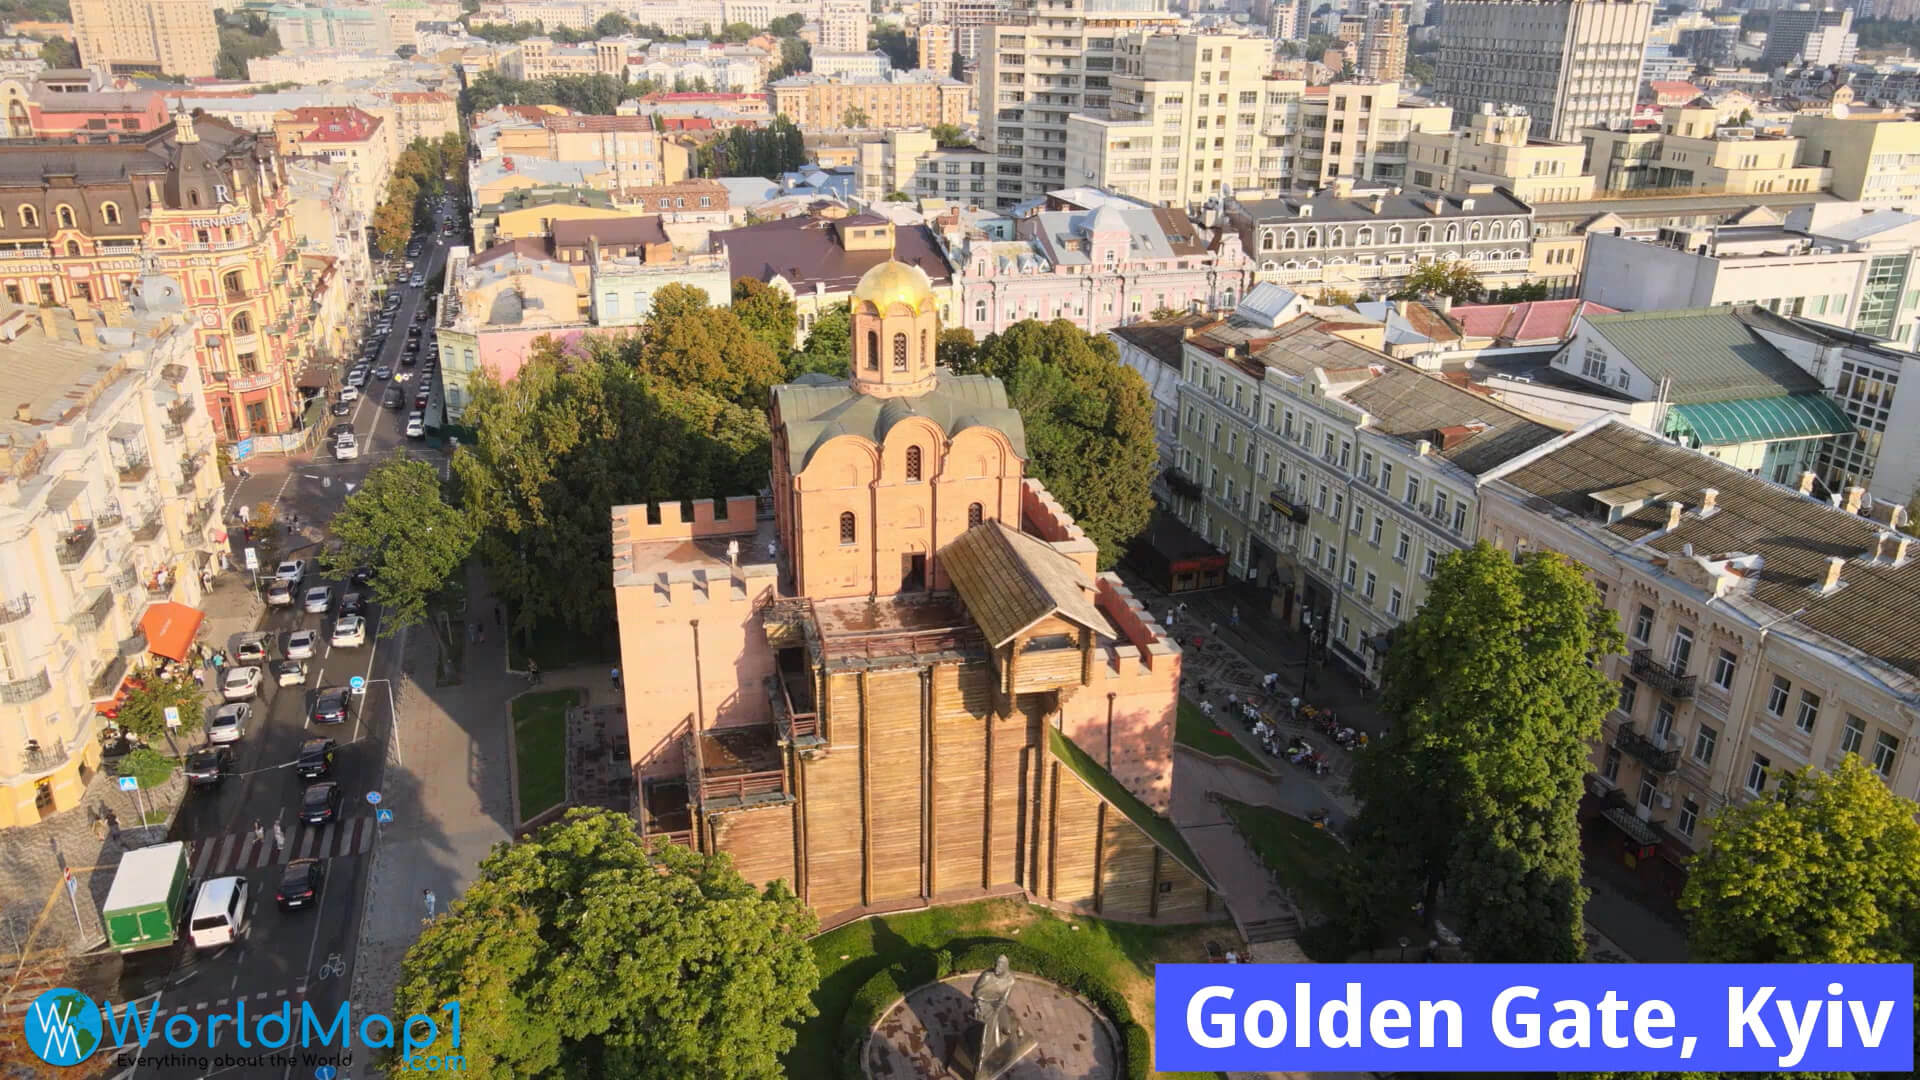 Golden Gate in Kiev